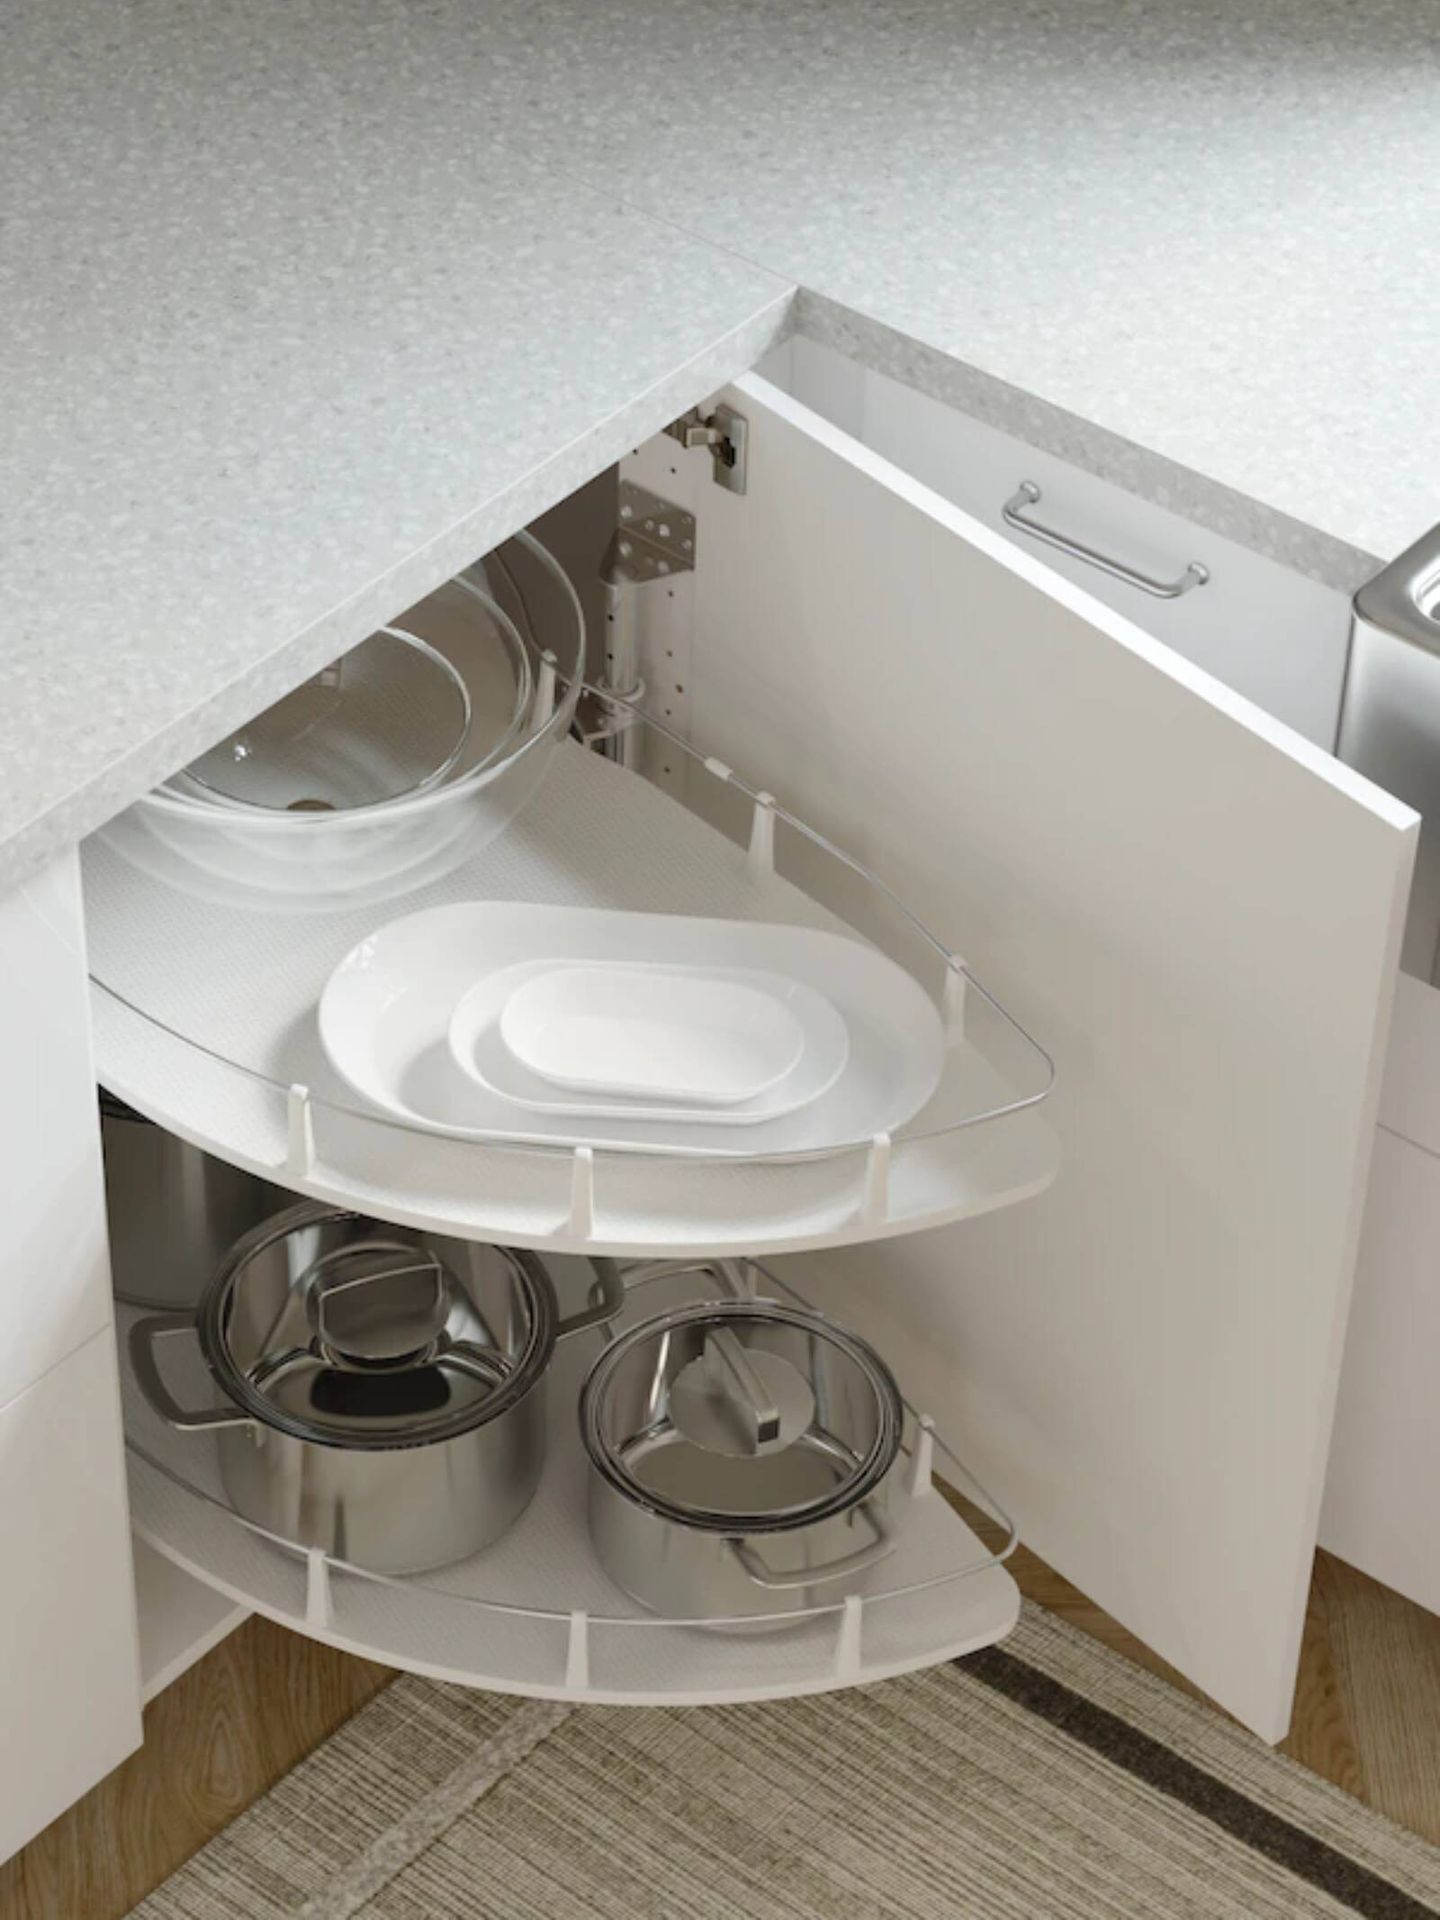 Ideas de Ikea para cocinas ordenadas. (Cortesía)